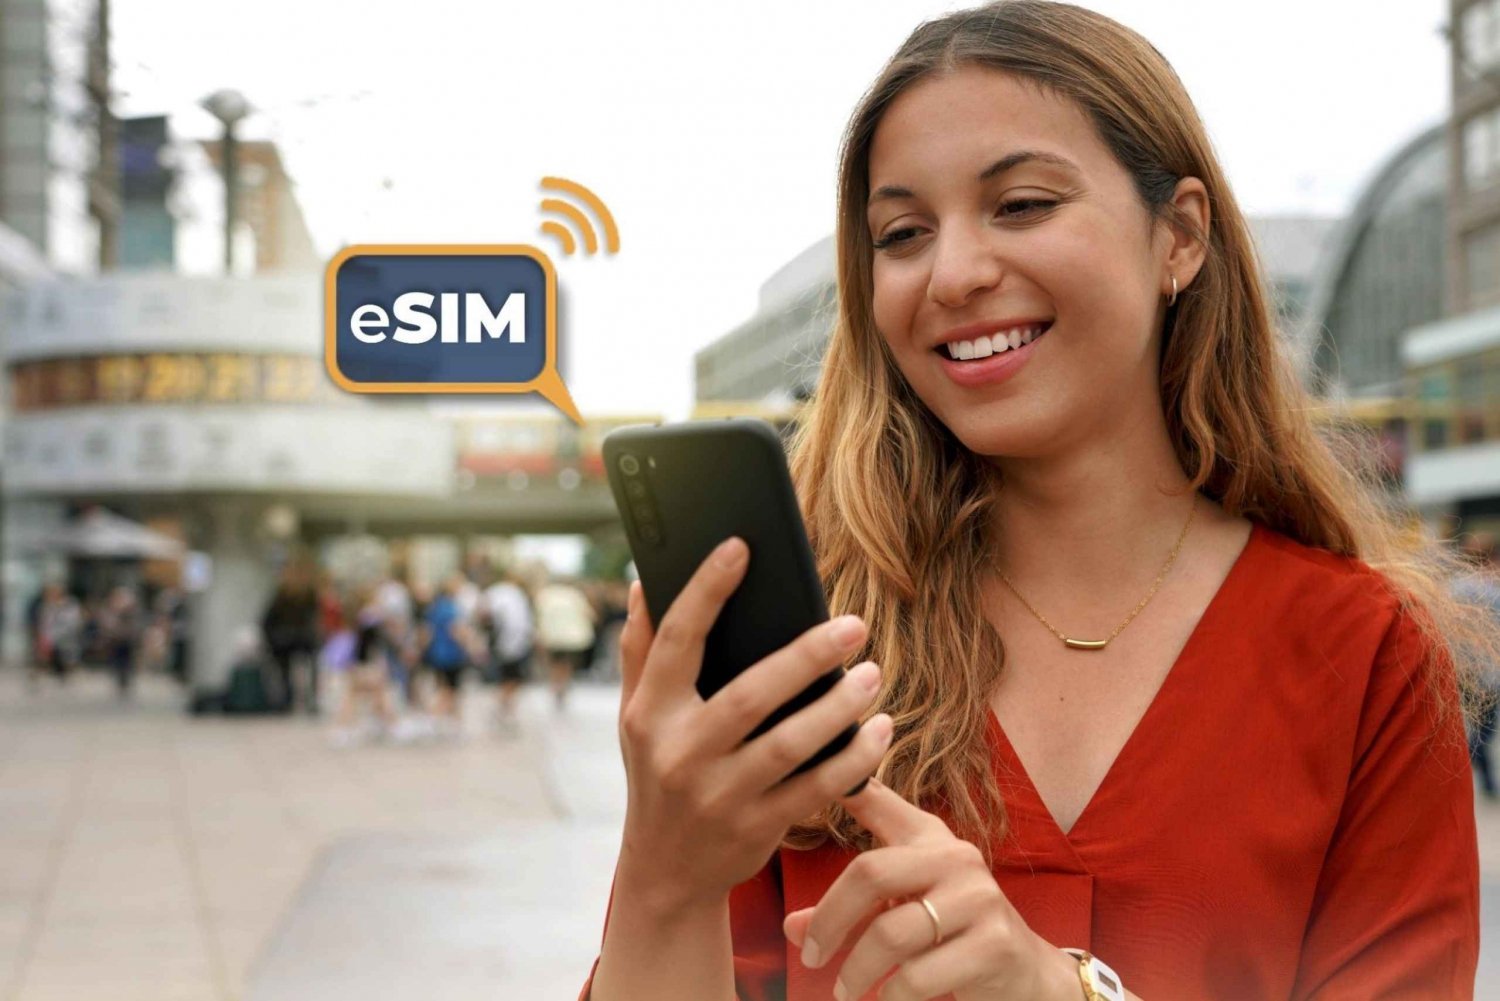 Berlijn&Duitsland: Onbeperkt EU-internet met eSIM Mobiele Data